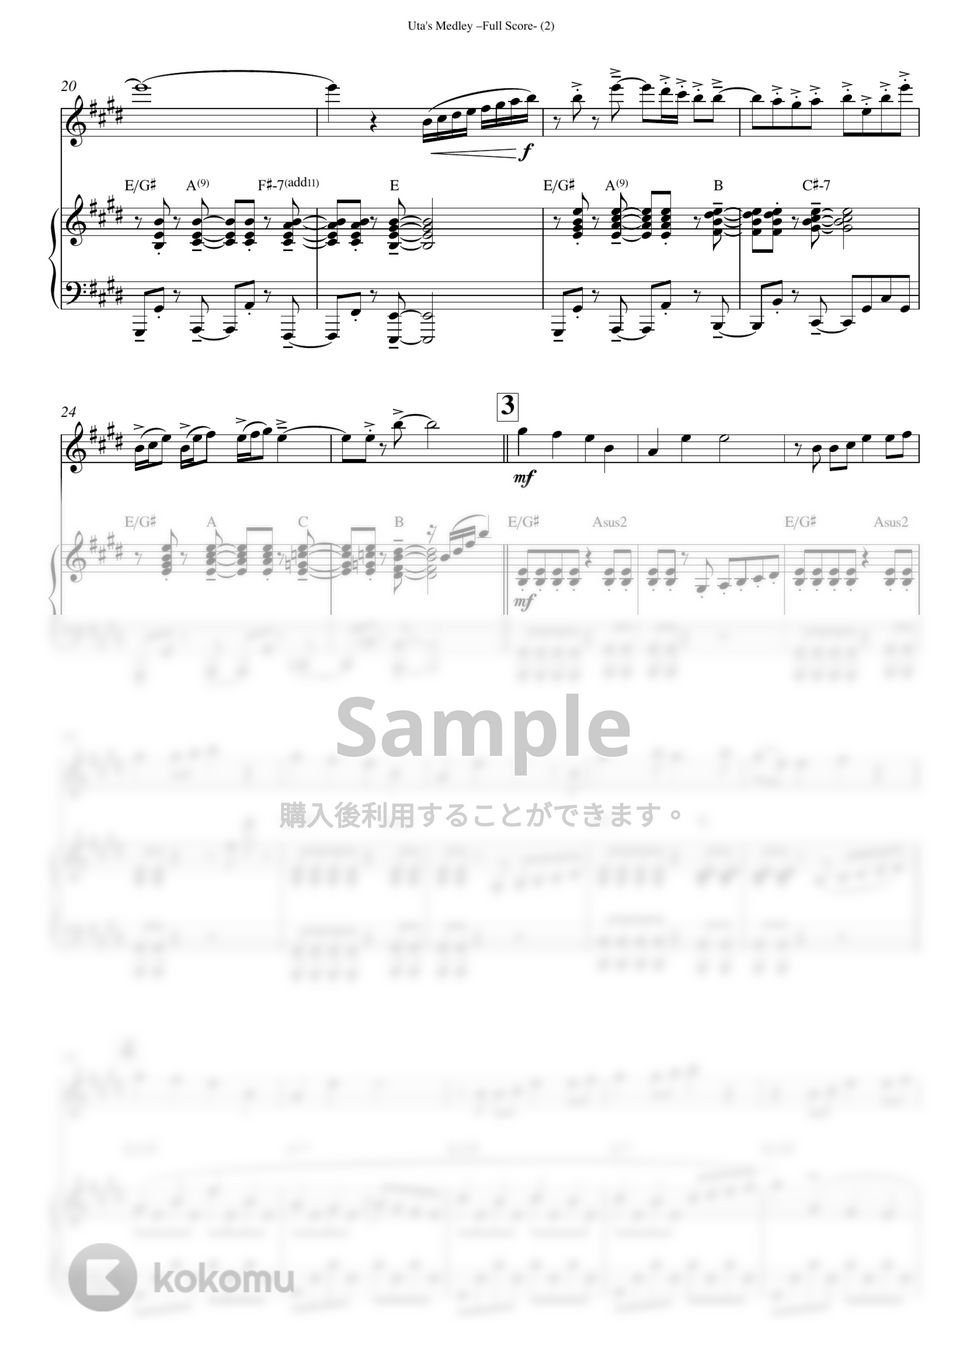 Ado - ワンピースメドレー (バイオリン(ピアノ伴奏付き)) by Maya